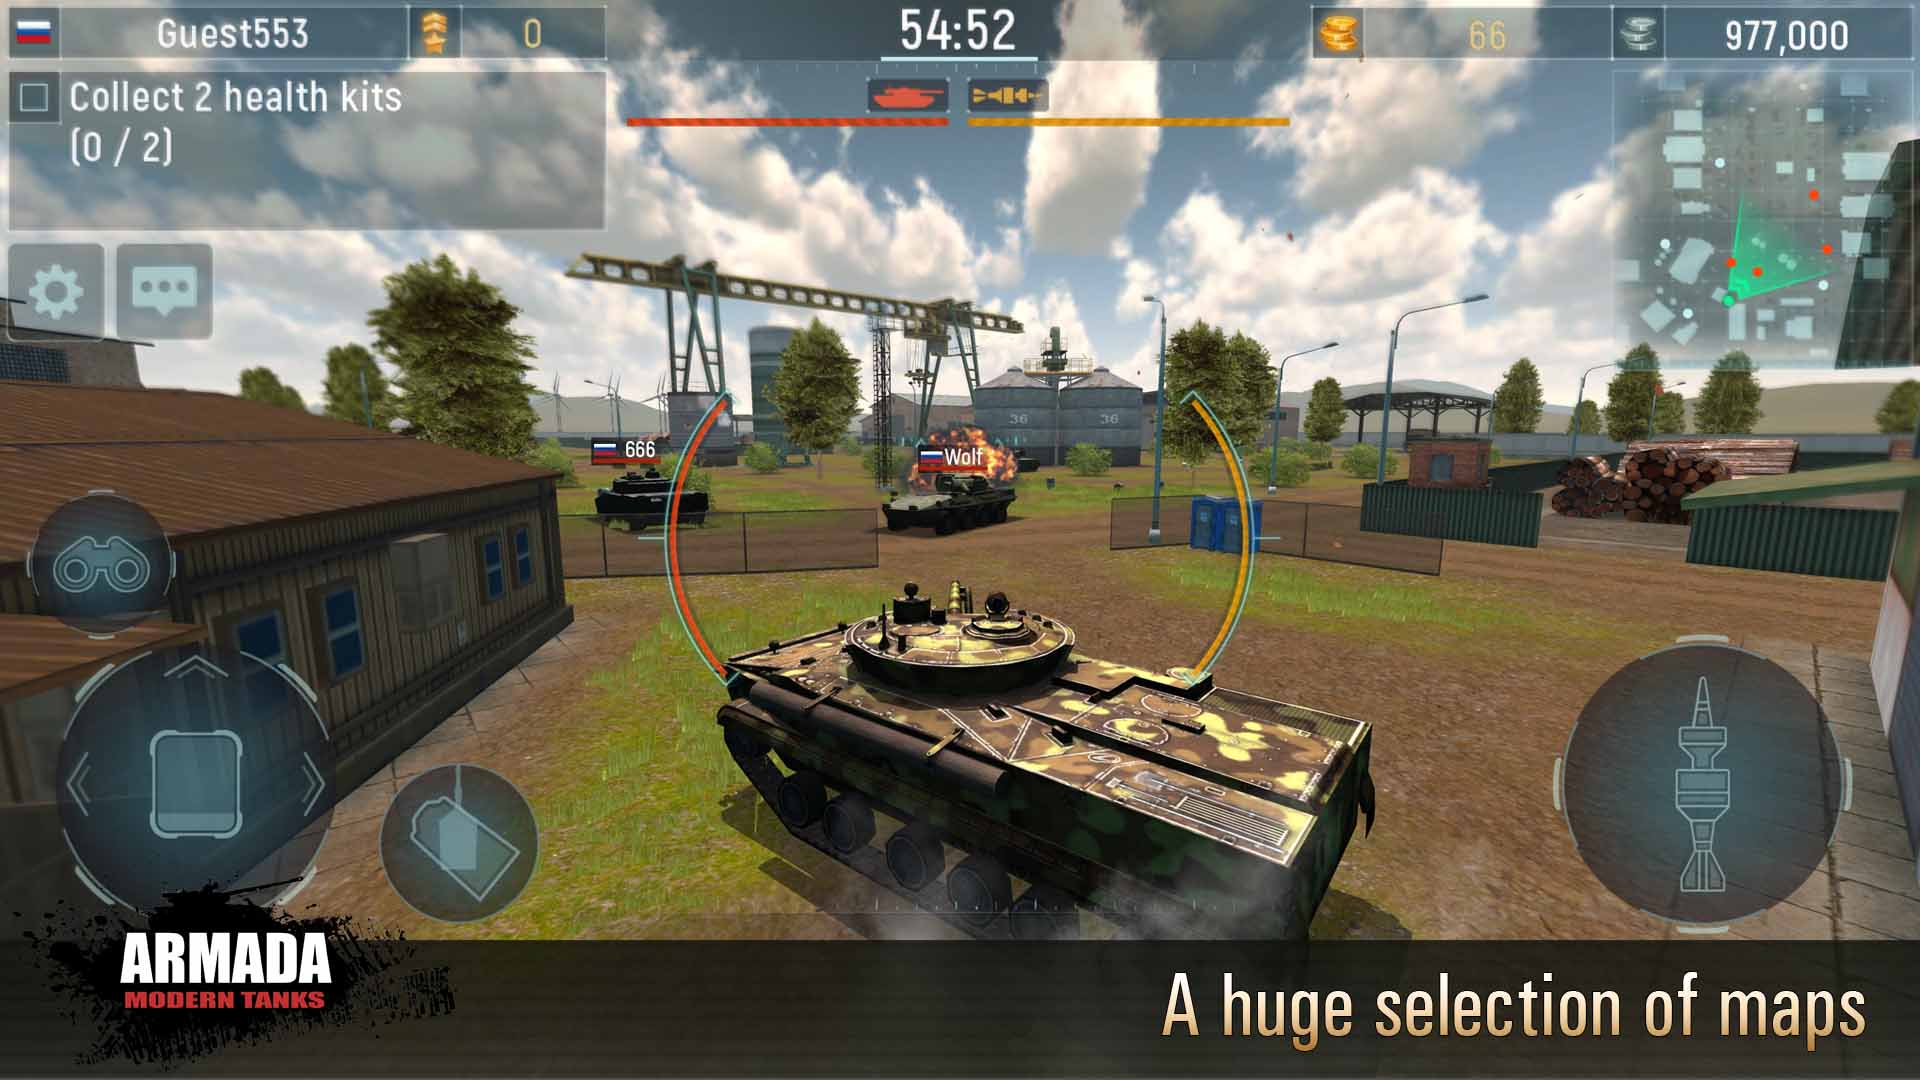 free tank war games